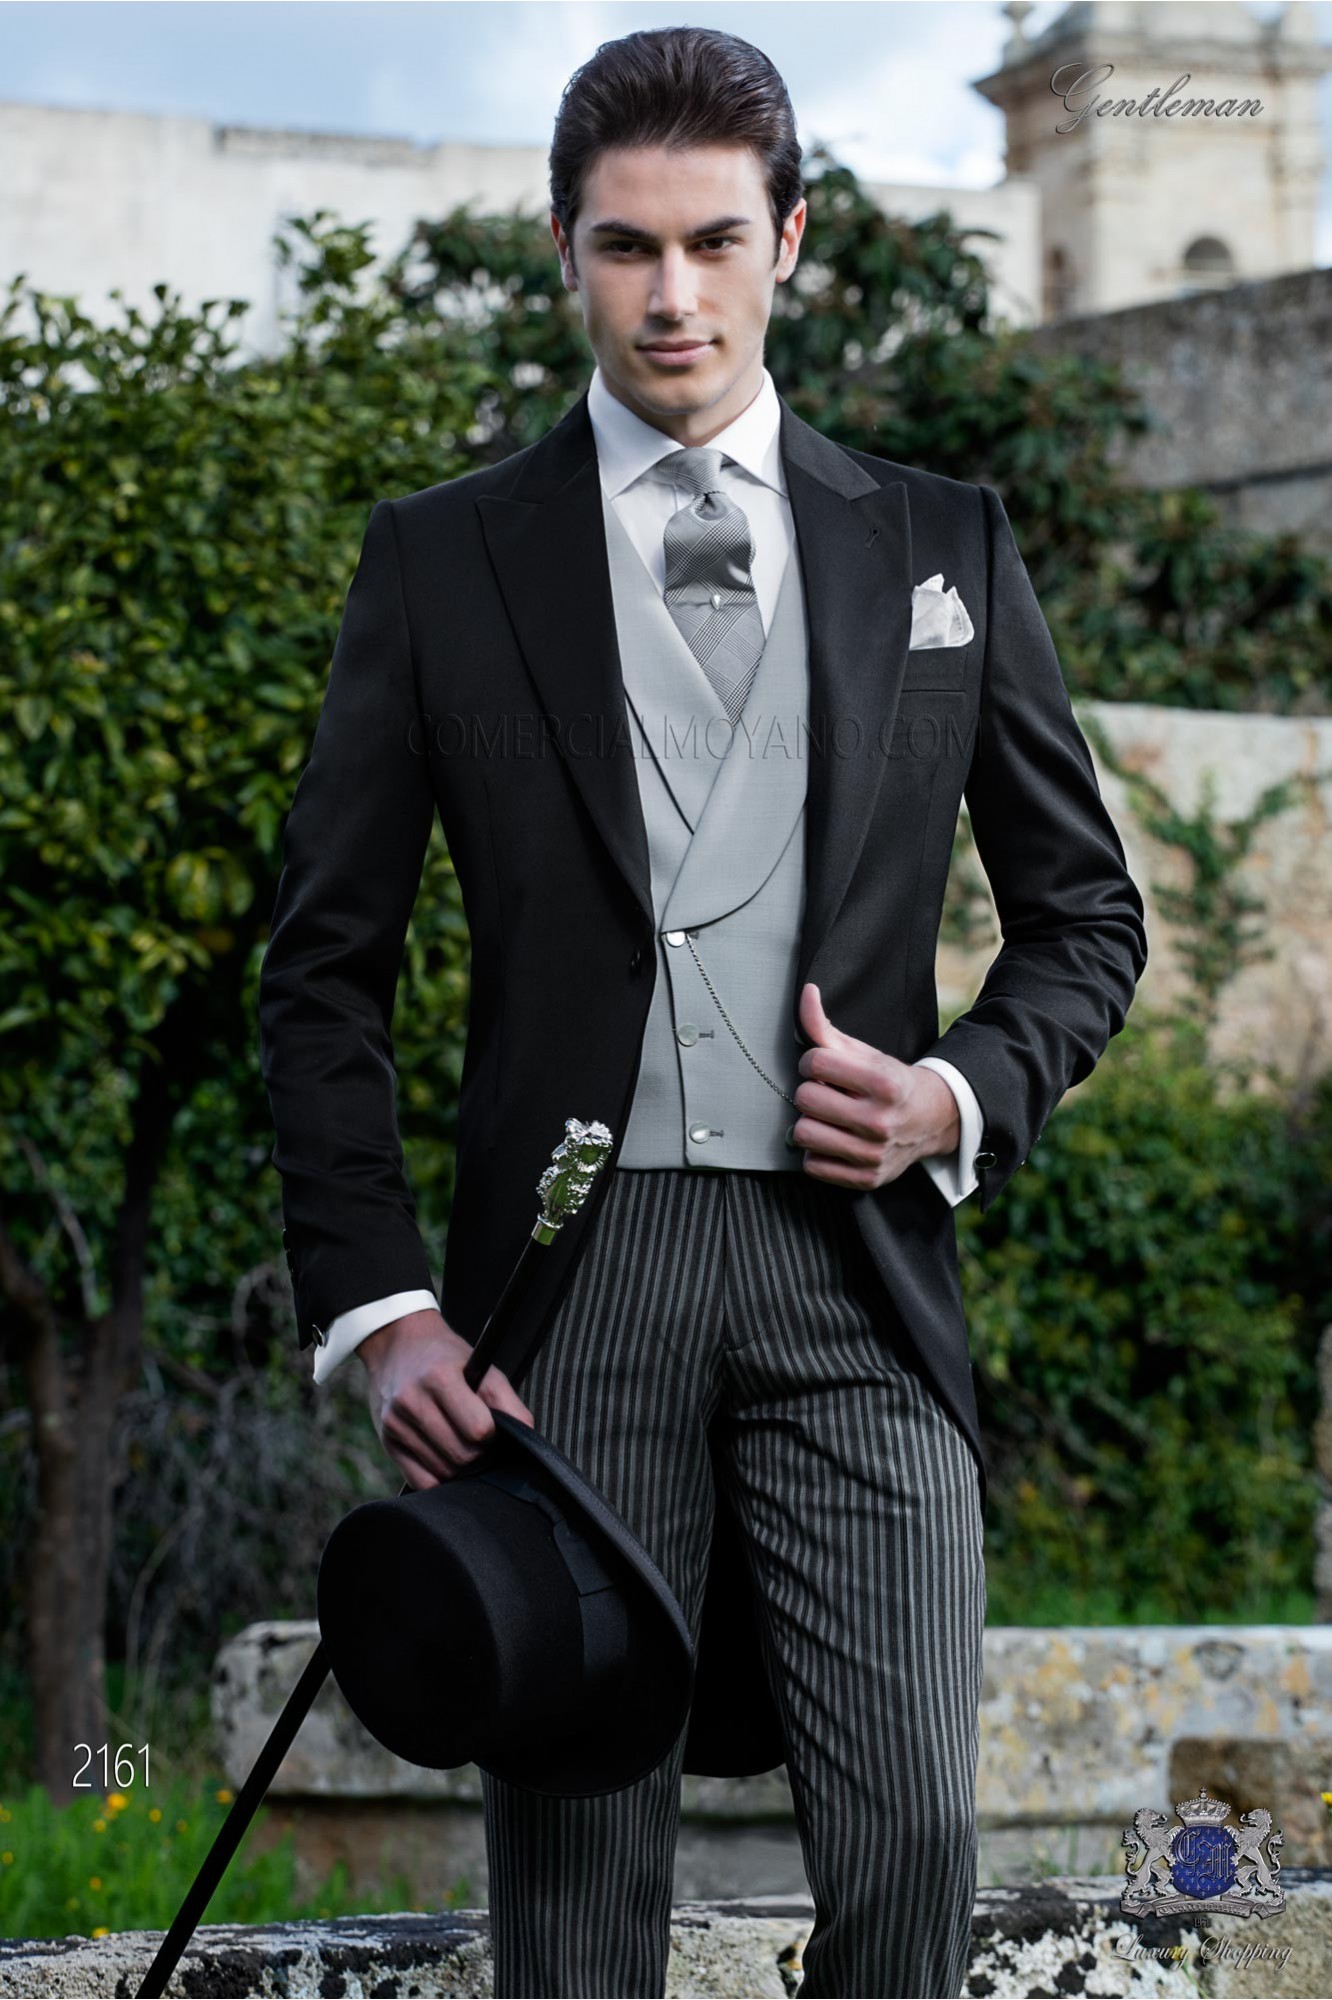 Chaqué negro de sastrería personalizada. Tejido 100% lana negro y pantalón de etiqueta modelo: 2161 Mario Moyano colección Gentleman